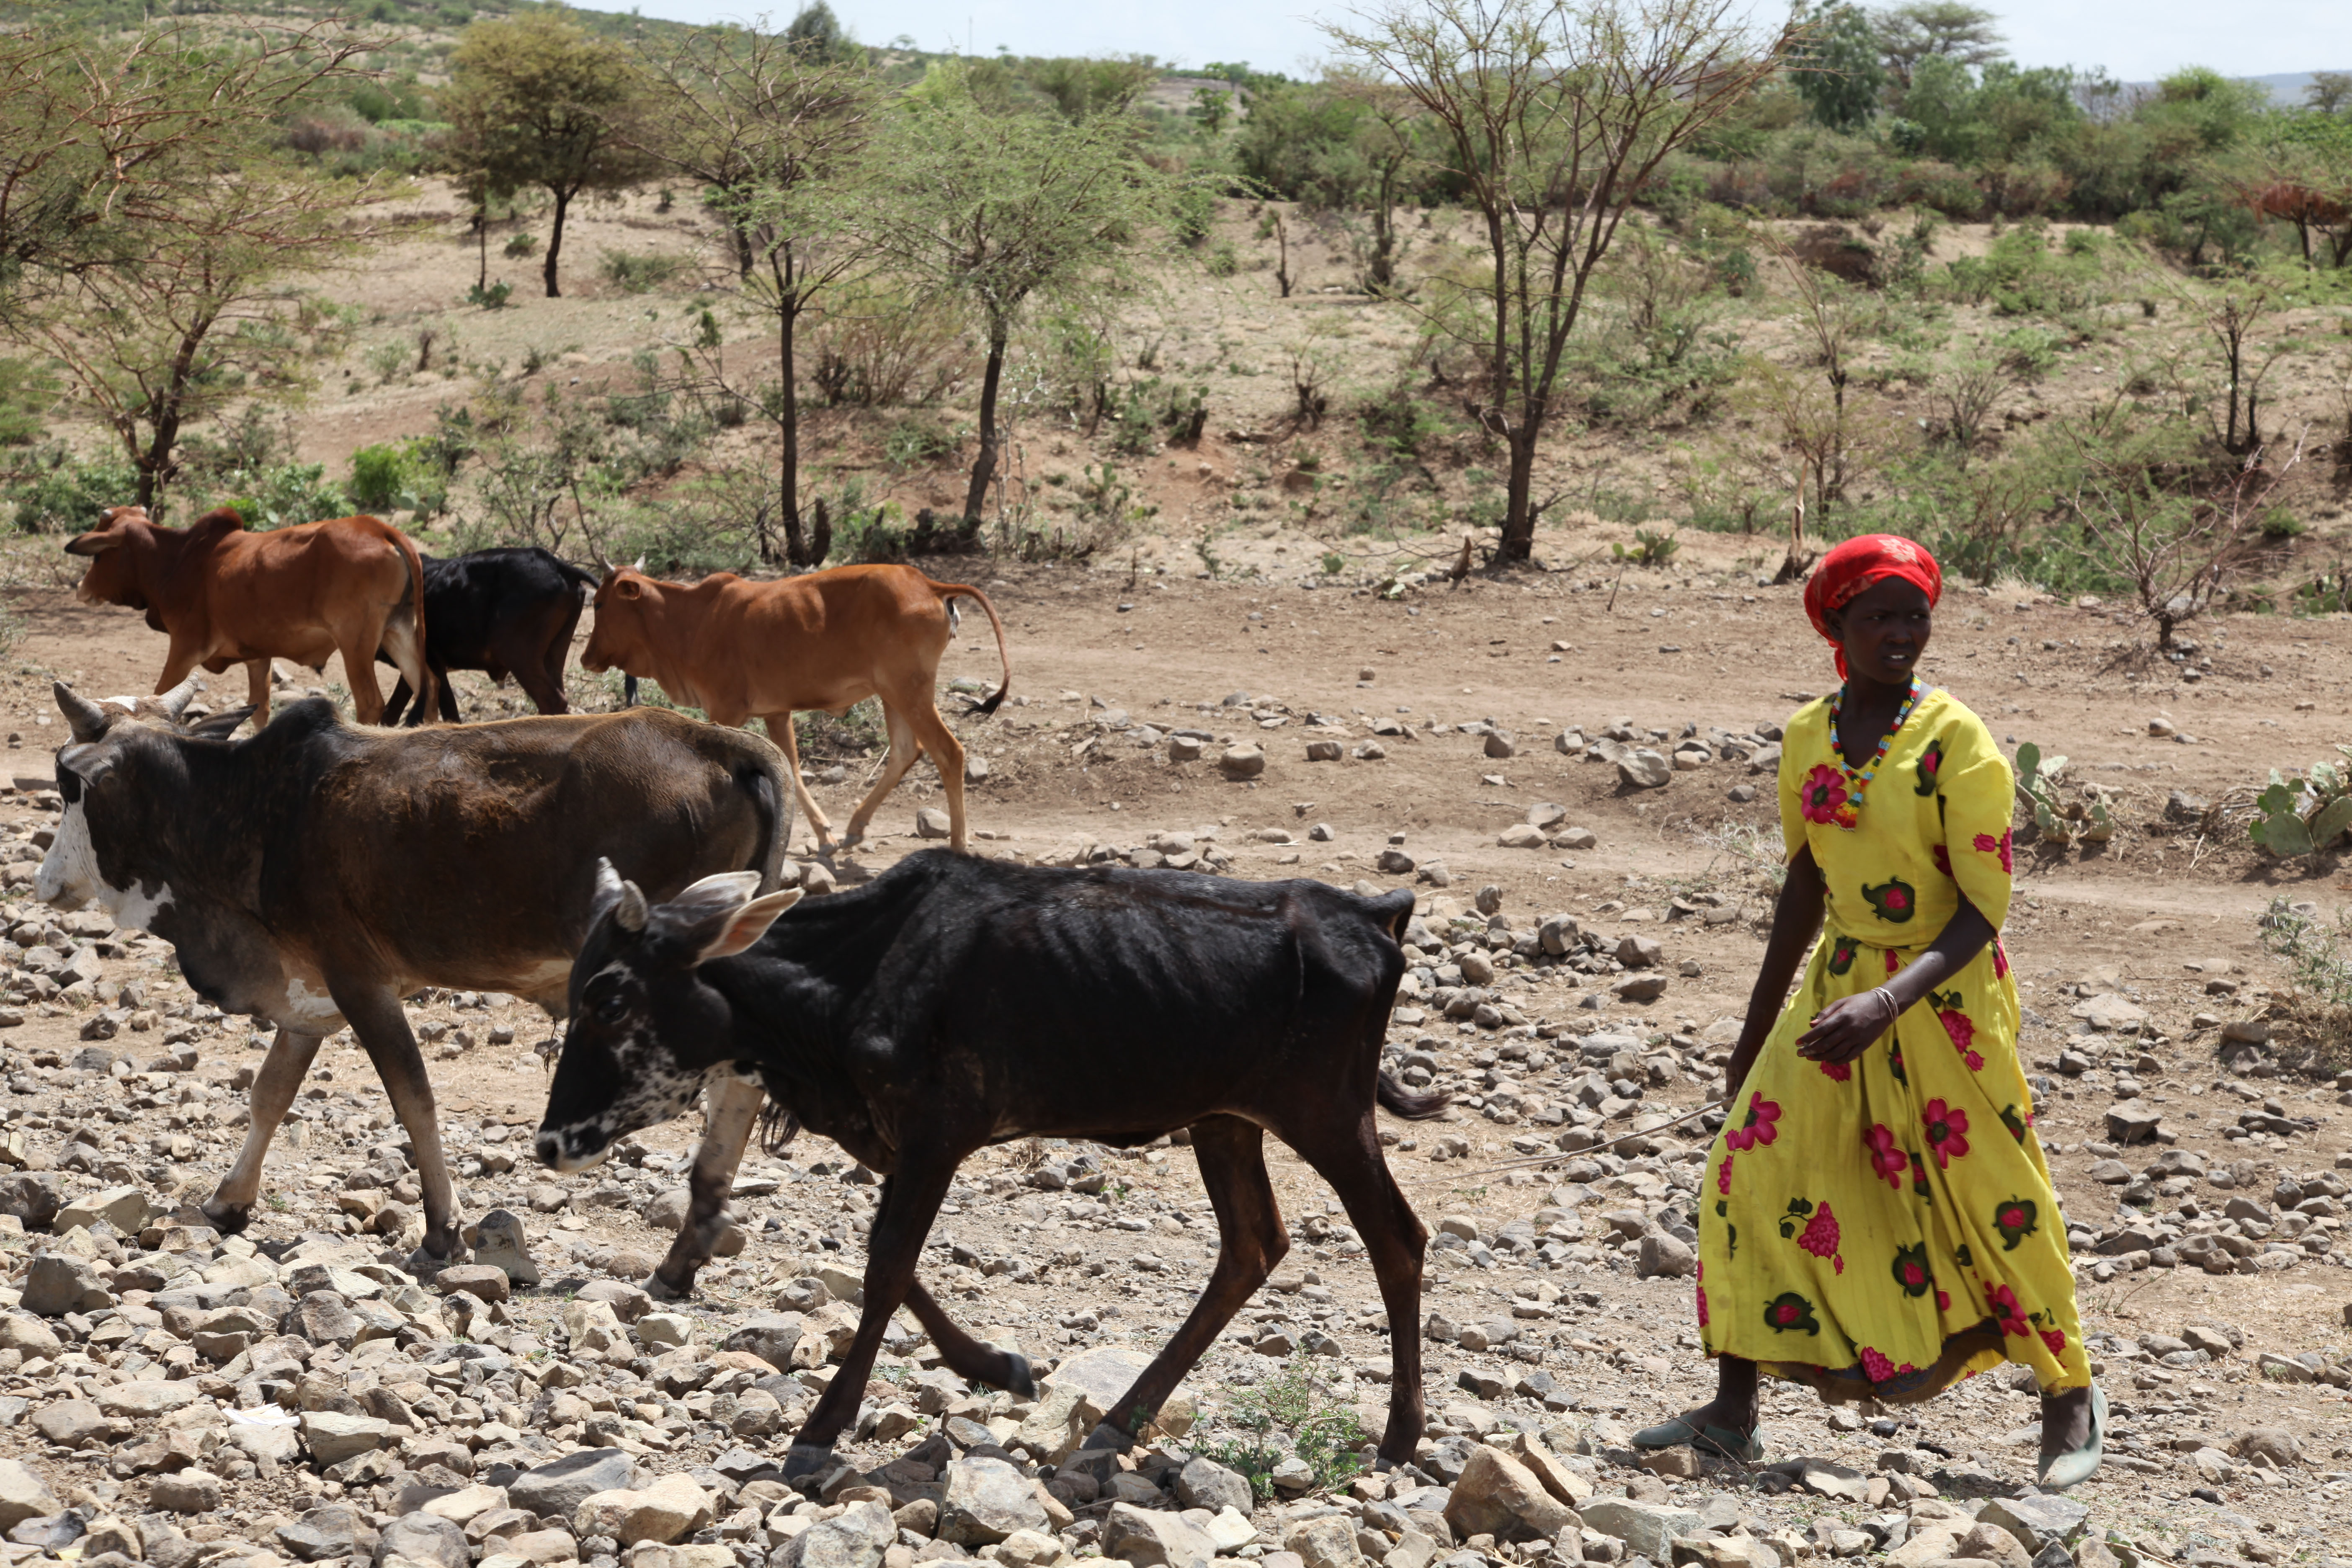 An African woman herding cattle